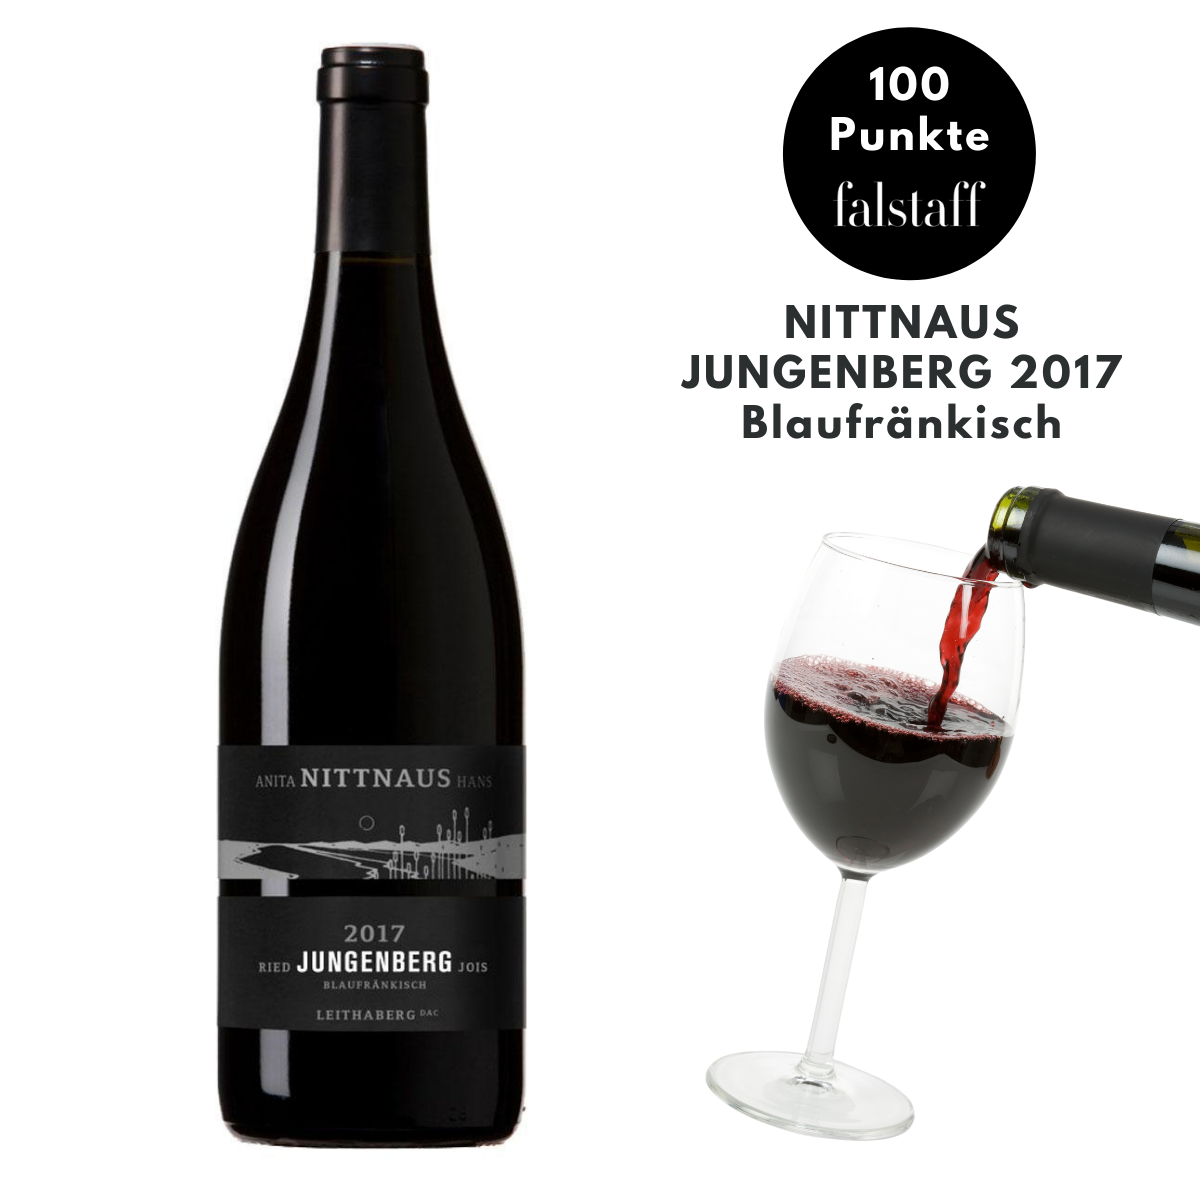 Nittnaus: Jungenberg 2017 - Blaufränkisch